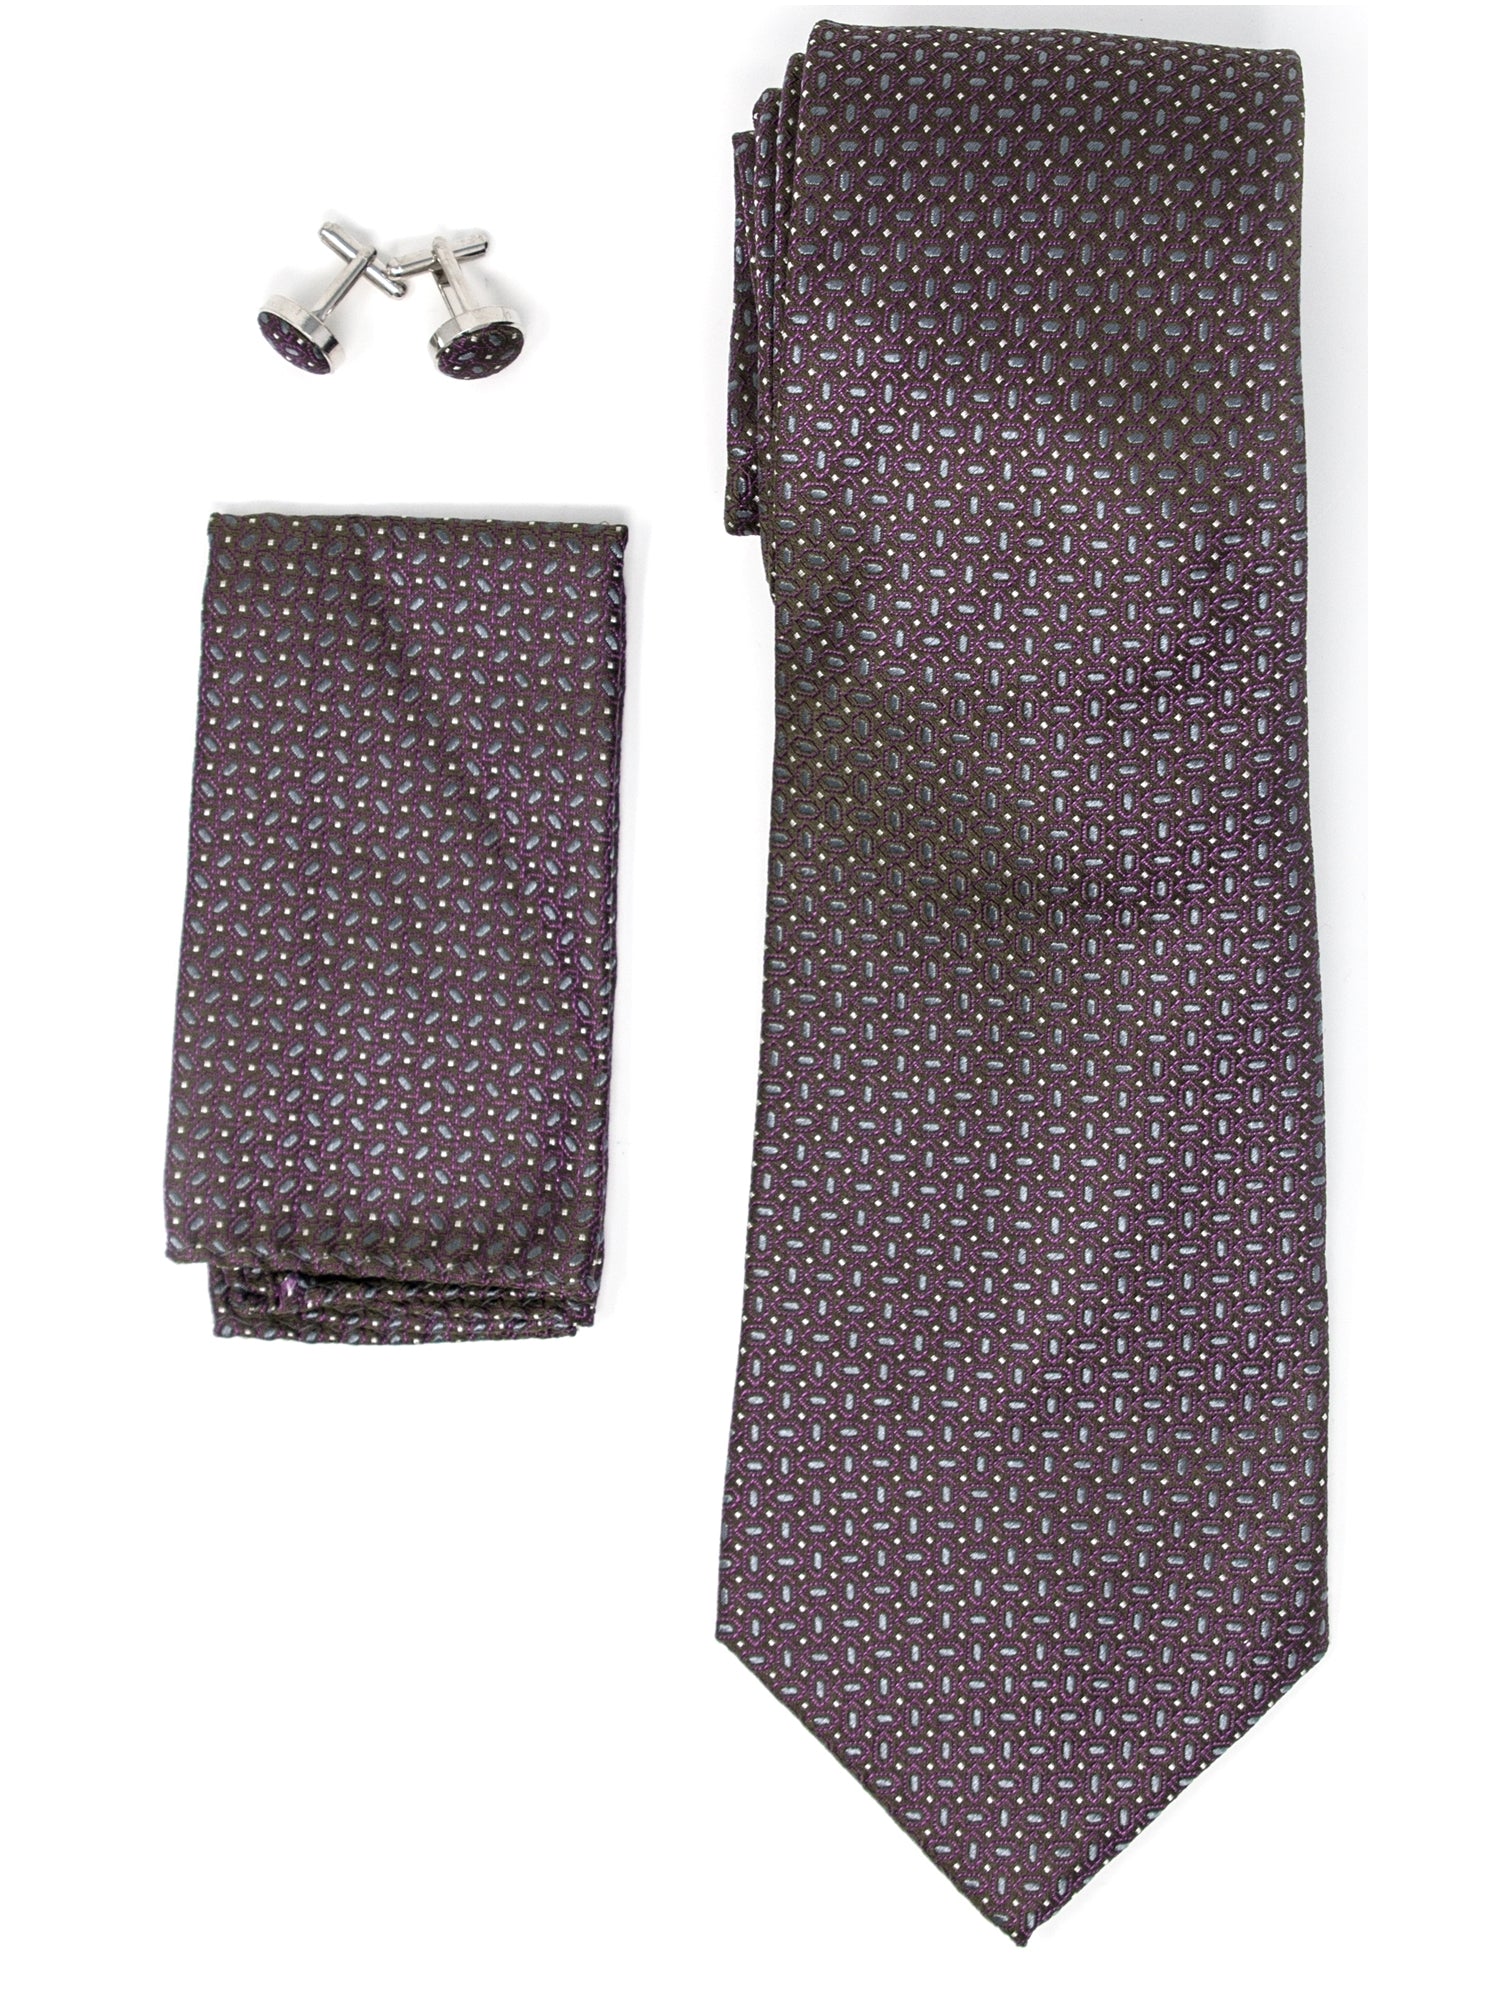 Men's Silk Neck Tie Set Cufflinks & Hanky Collection Neck Tie TheDapperTie Brown And Gray Geometric Regular 